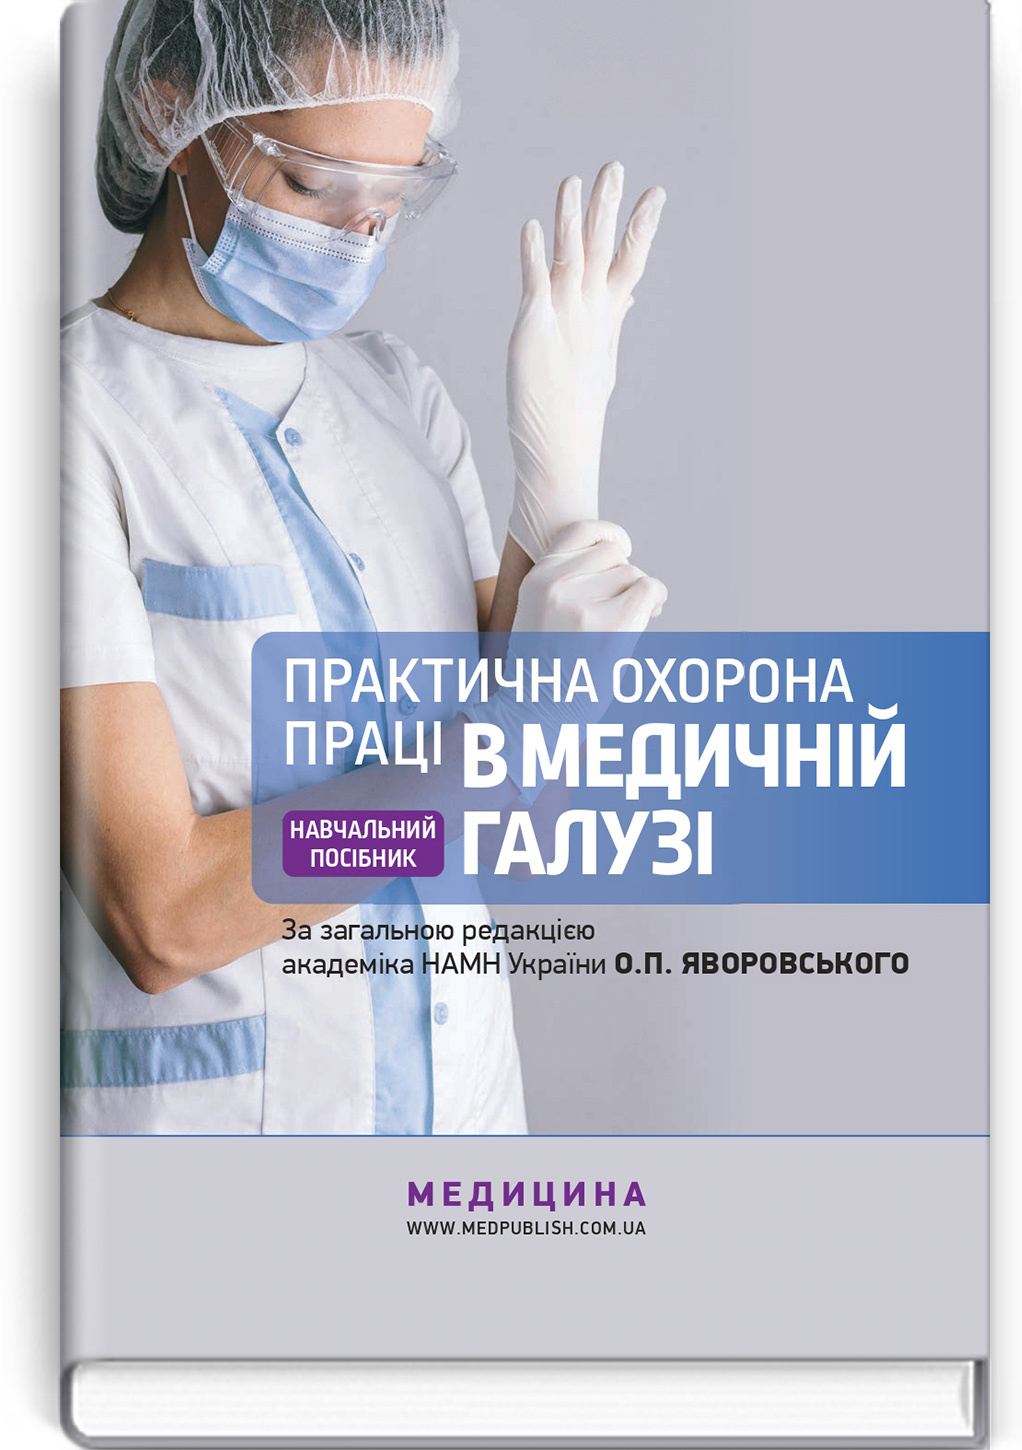 Практична охорона праці в медичній галузі: навчальний посібник